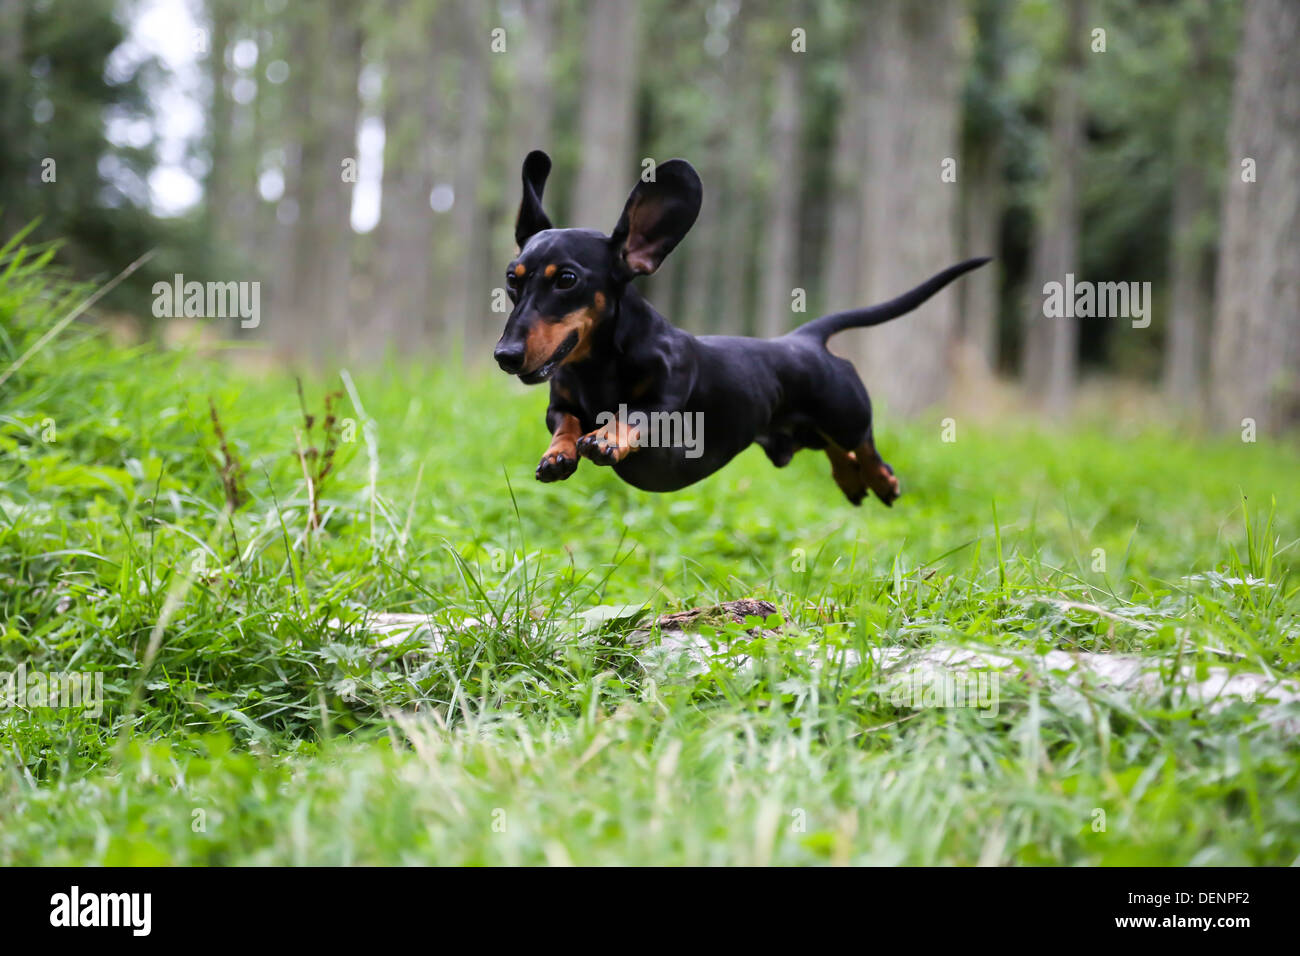 ein Zwergdackel springen in einem Wald. Sie sind auch bekannt als Wurst und Wiener Hunde Stockfoto